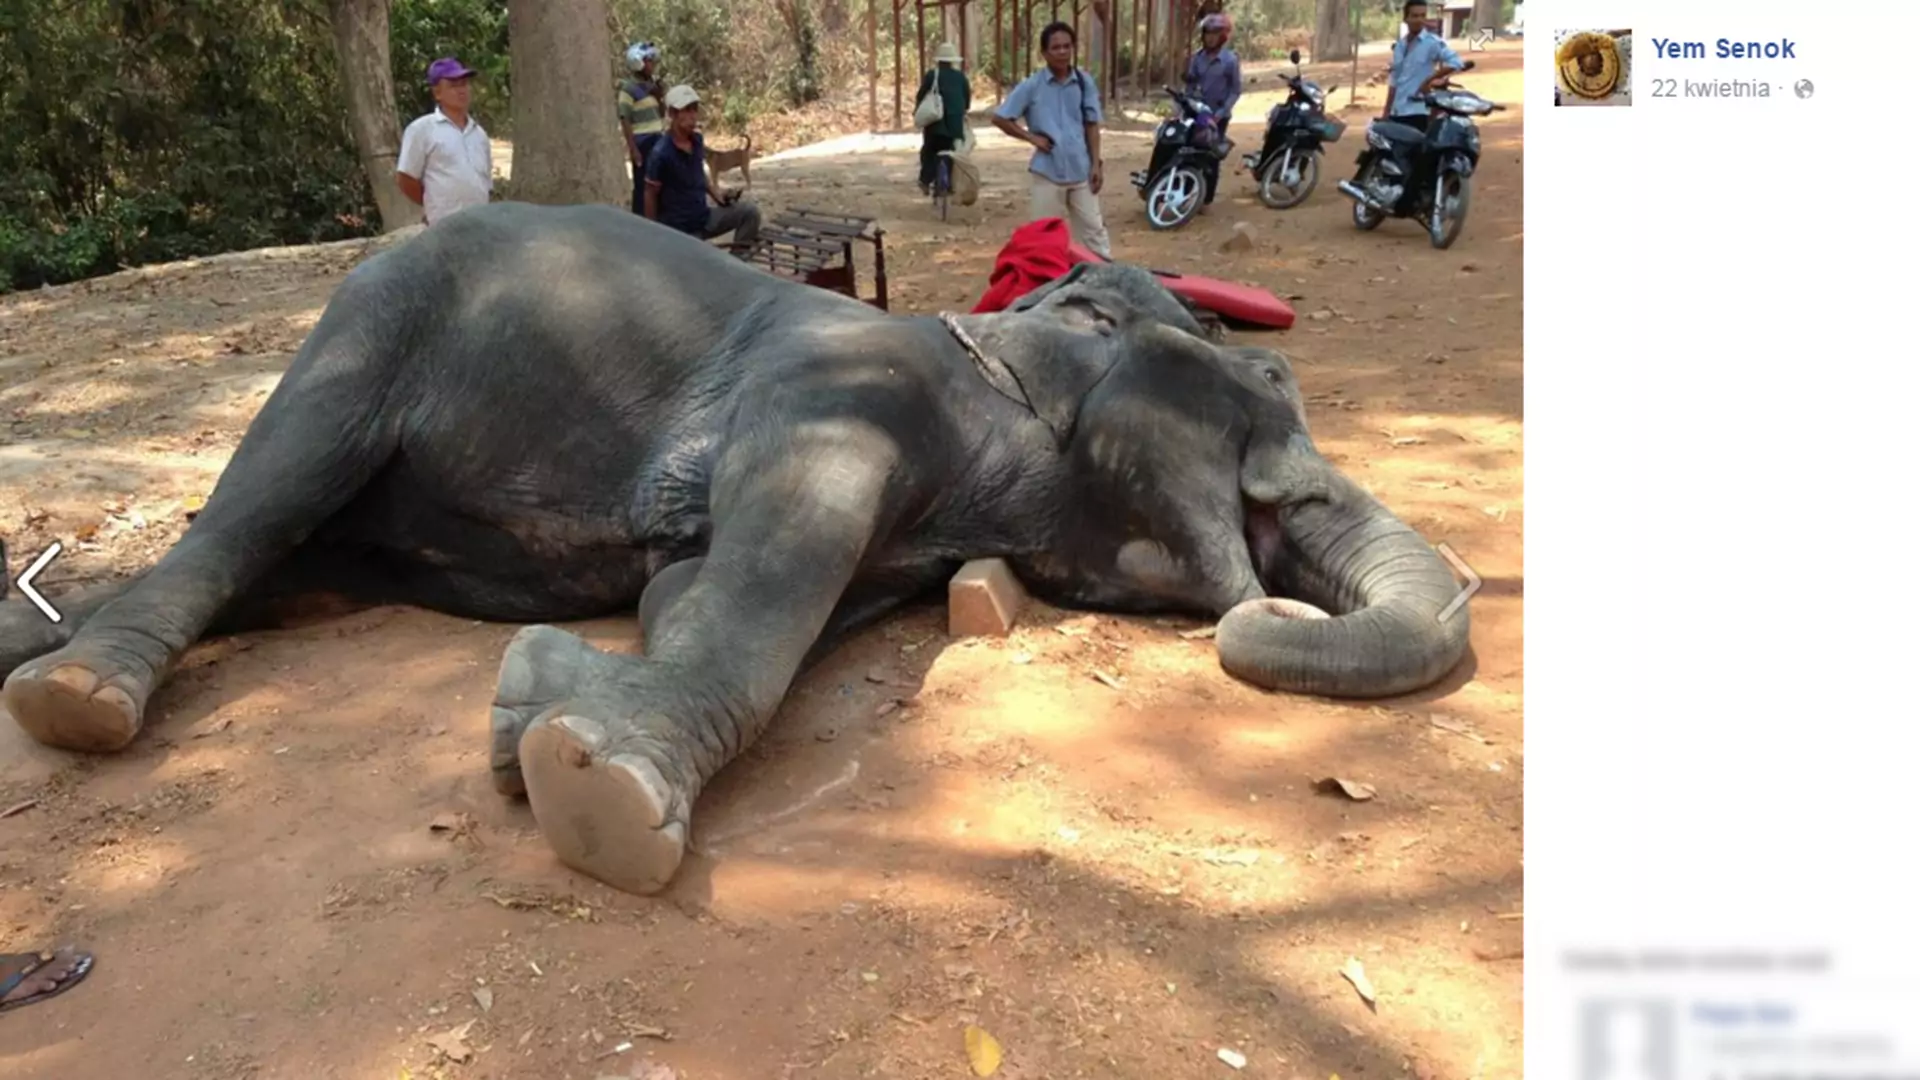 Słoń zdechł na zawał podczas dźwigania turystów. Zdjęcie rozpętało w internecie burzę